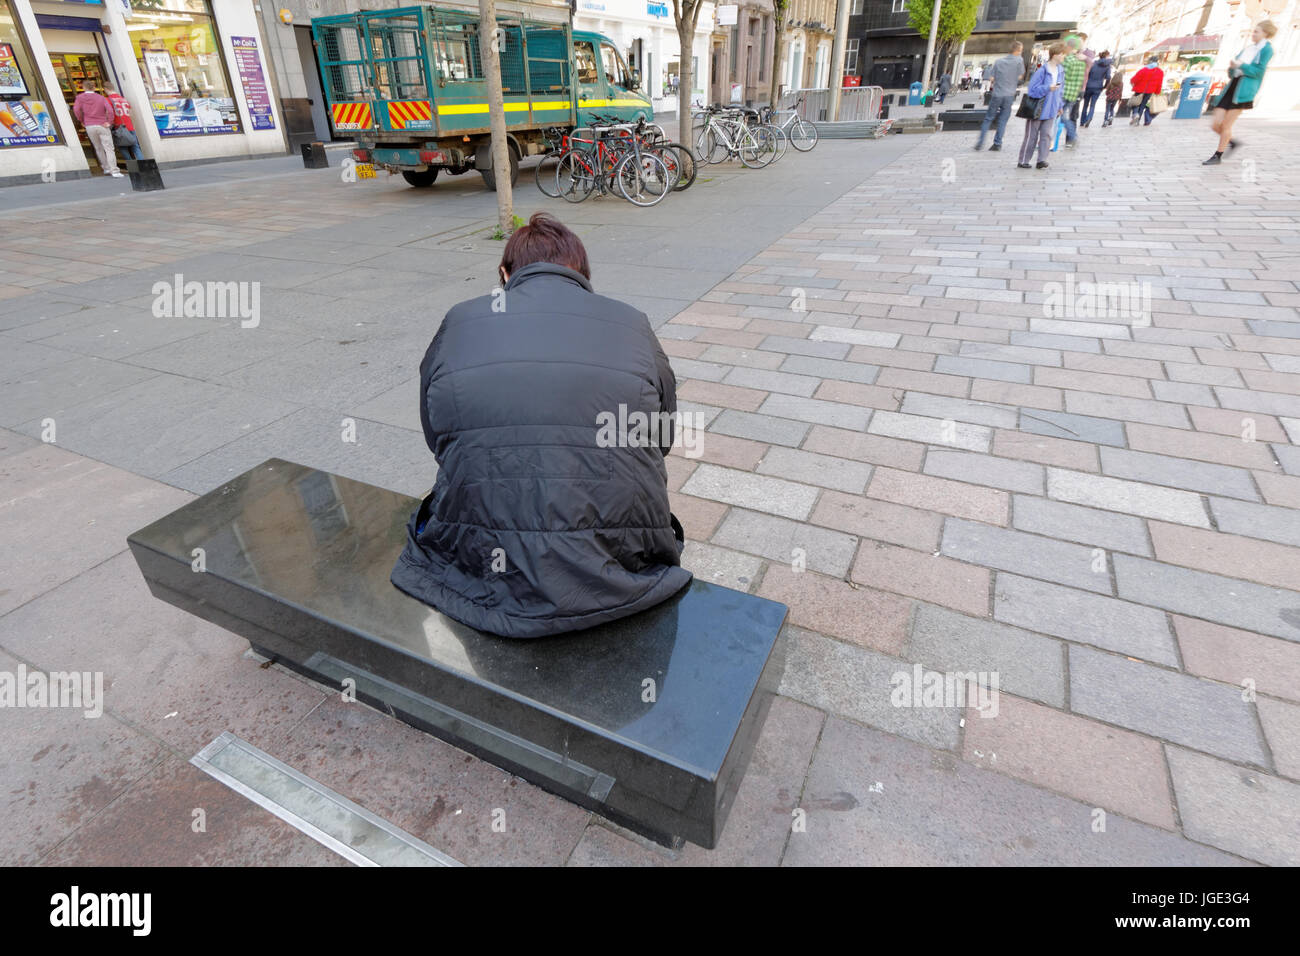 Depression und Isolation Person auf Bank allein schaukelte hin und her auf belebten Straße arbeitslos geistige Wohlfahrt Stockfoto